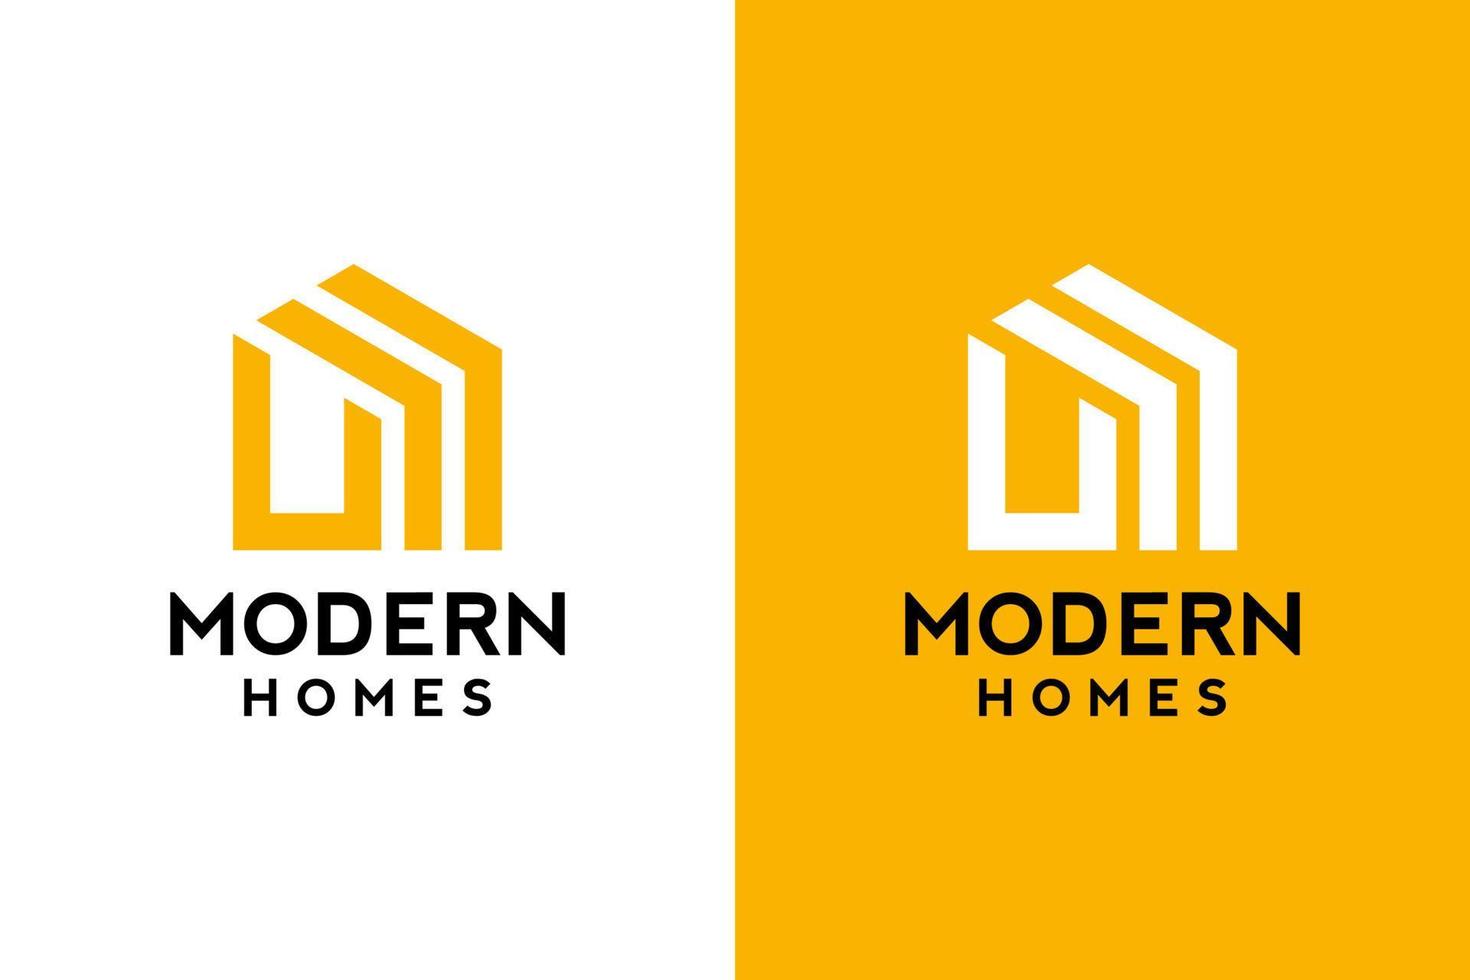 Logo-Design von u in Vektor für Bau, Haus, Immobilien, Gebäude, Eigentum. Minimale fantastische trendige professionelle Logo-Designvorlage auf doppeltem Hintergrund.